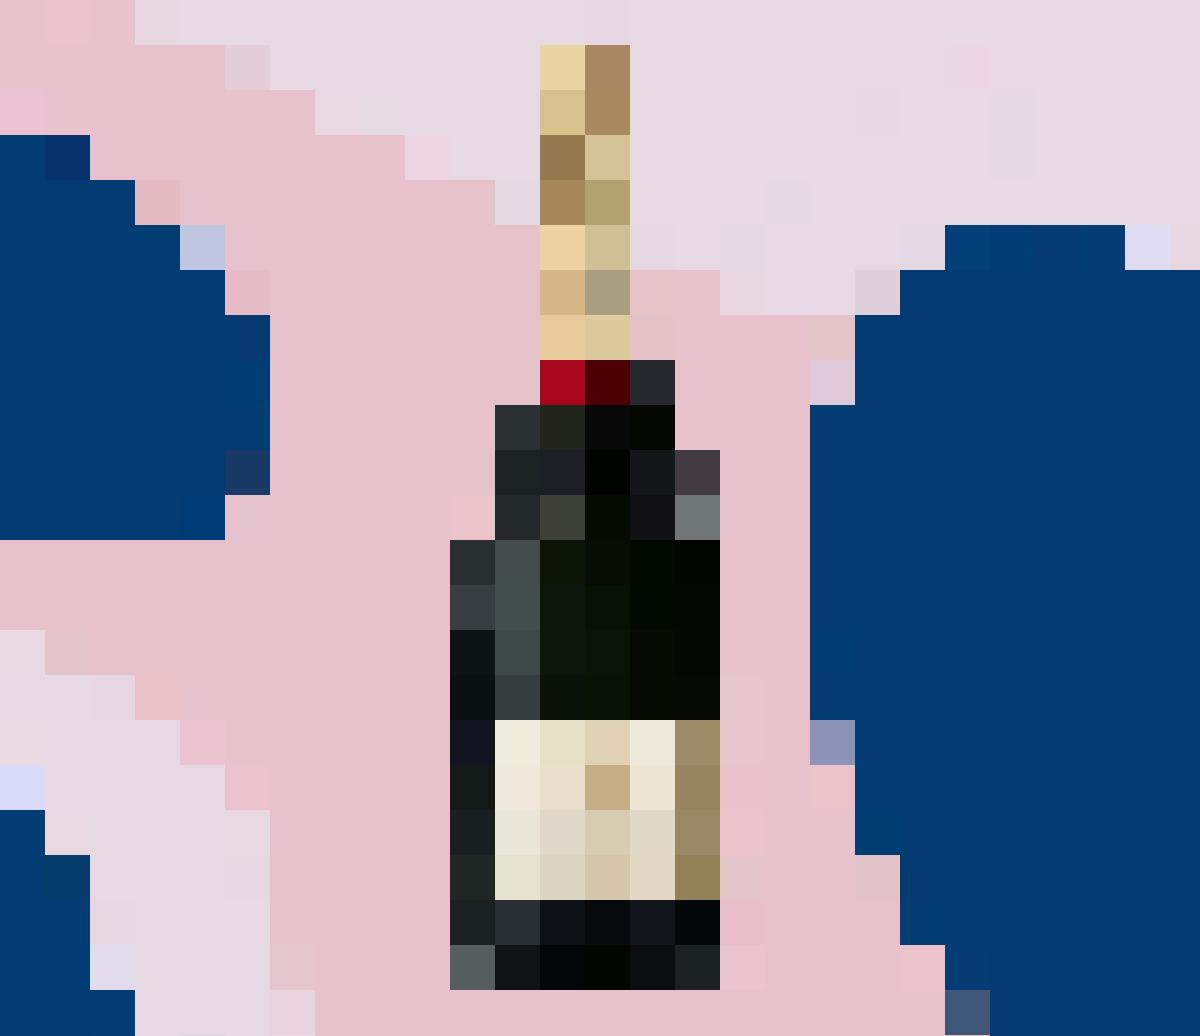 Le meilleur pour la fin: glamour et séduisante, la star de Moët & Chandon est présentée dans une bouteille magnum de 1,5 litre. Bonne année!